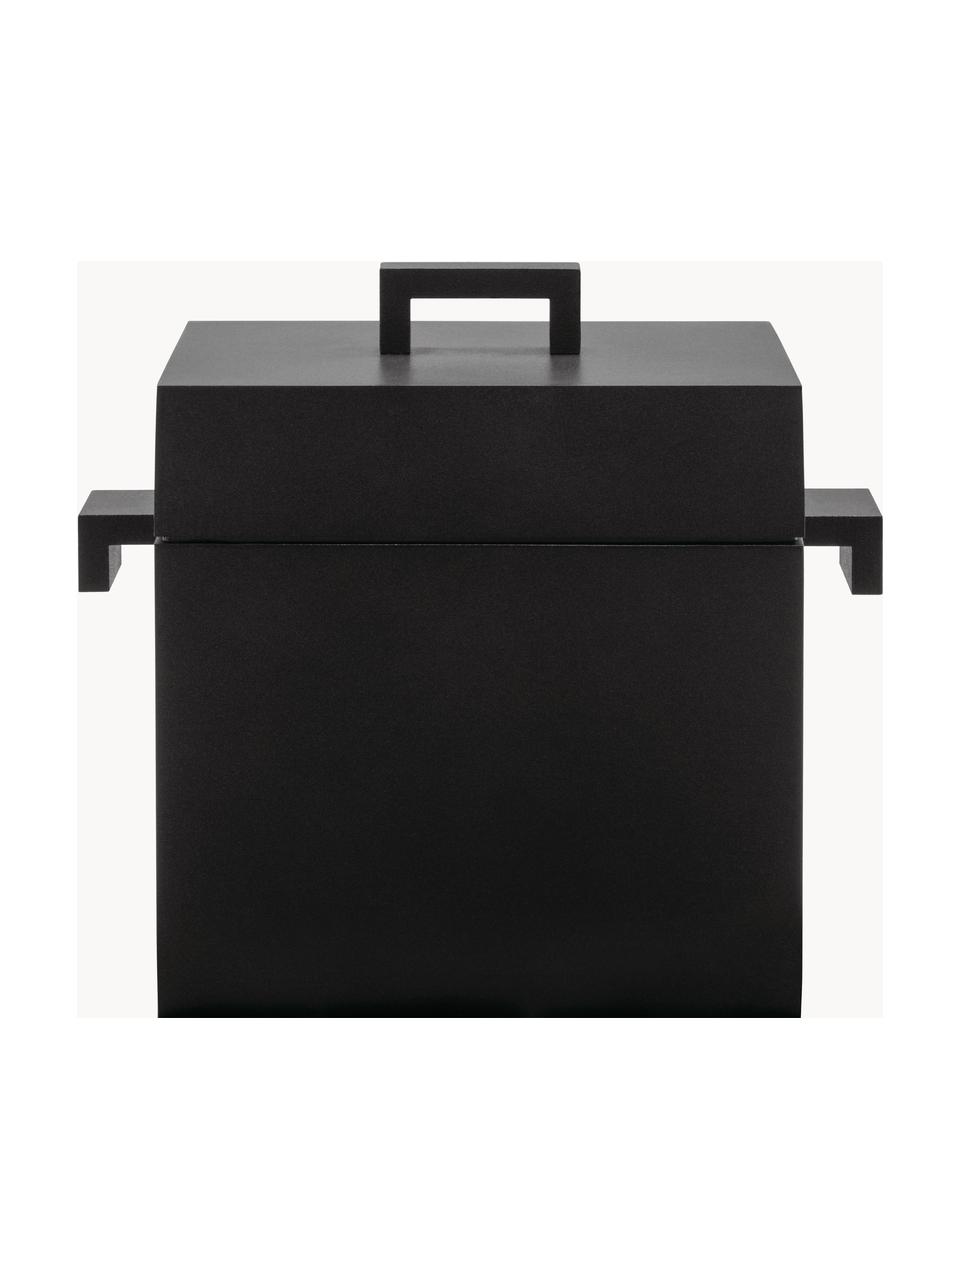 Kookpan La Cubica met anti-aanbaklaag, Gecoat aluminium, Zwart, B 22 x H 20 x D 17 cm